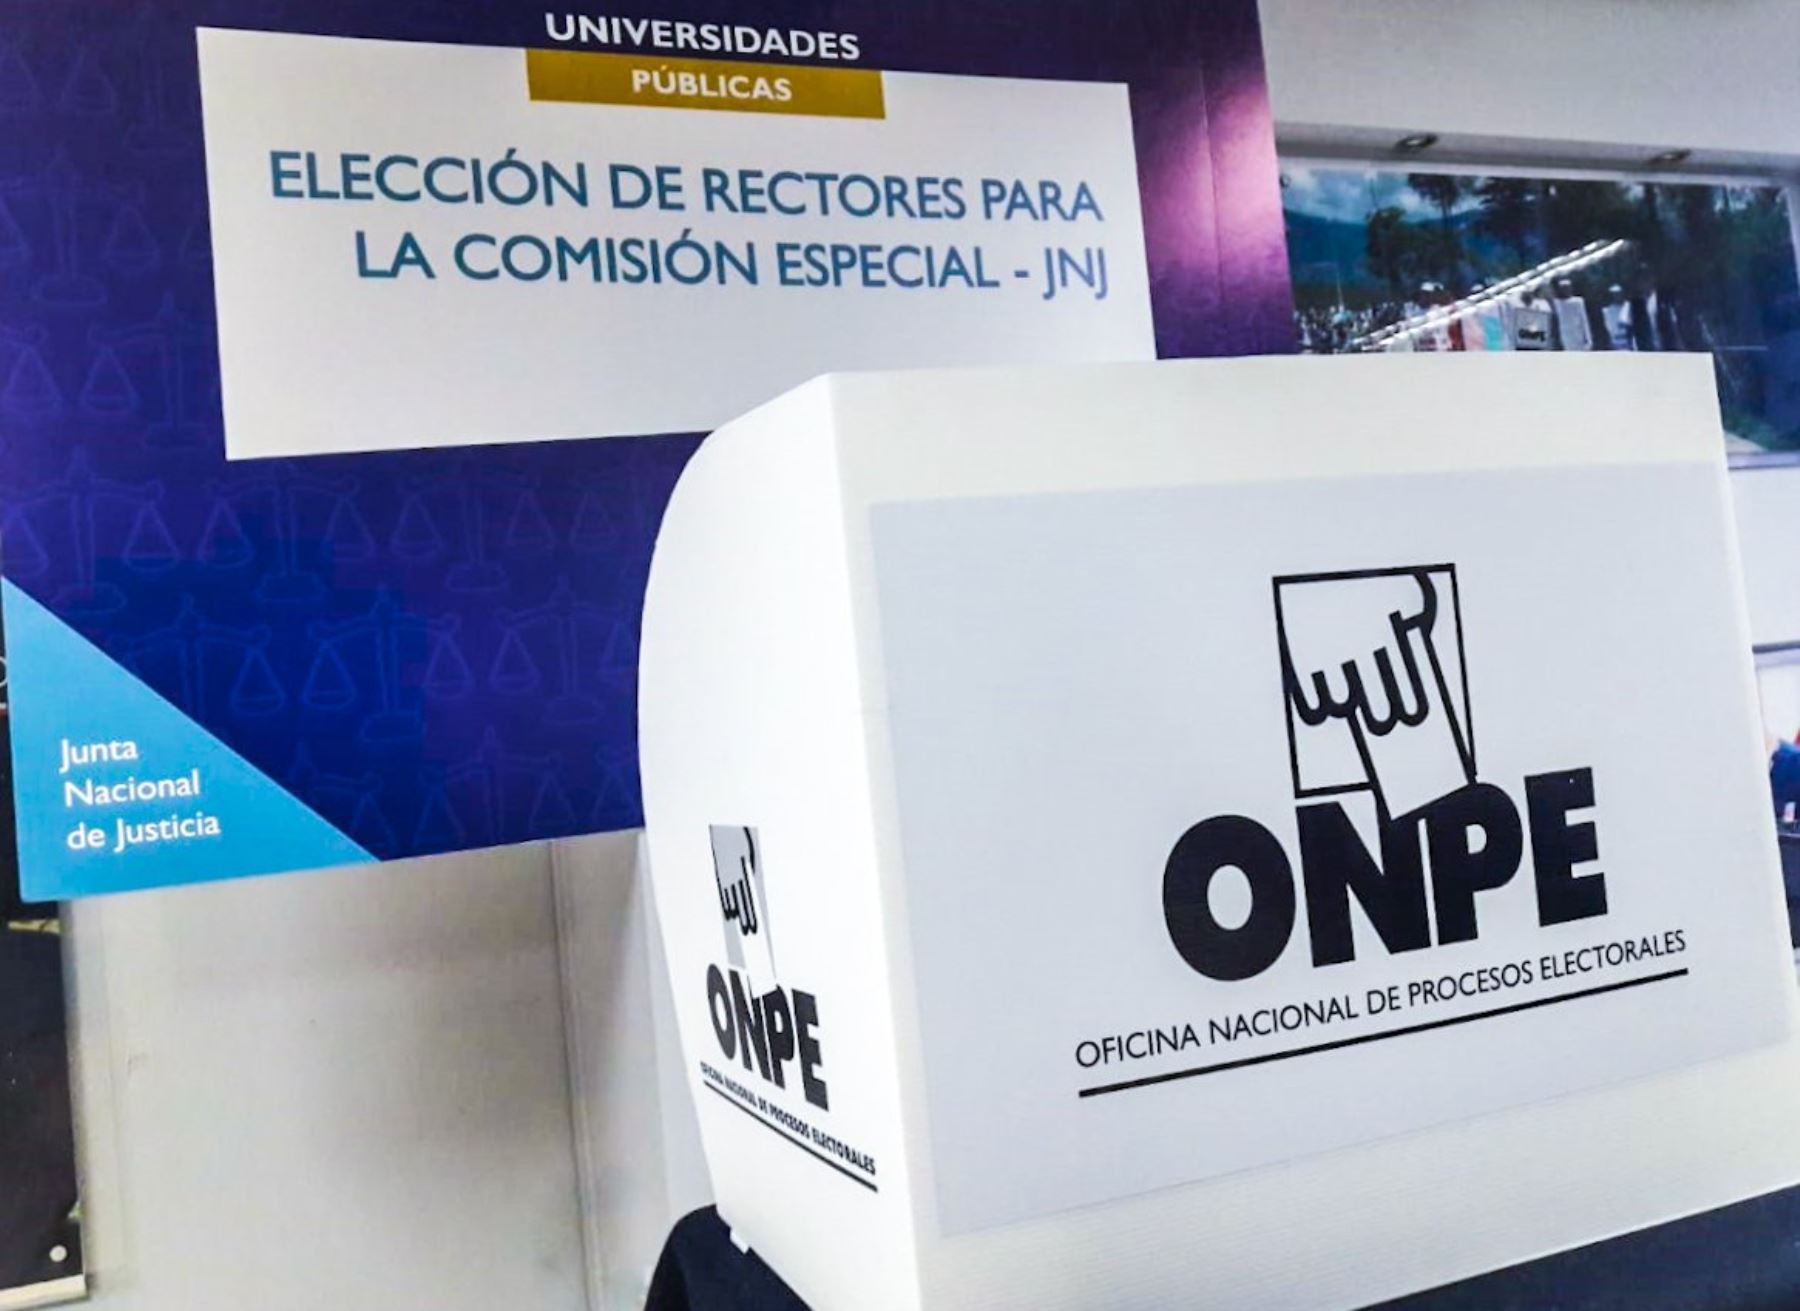 ONPE realiza hoy elección de rectores de las universidades públicas y privadas ante la Comisión Especial de la JNJ.